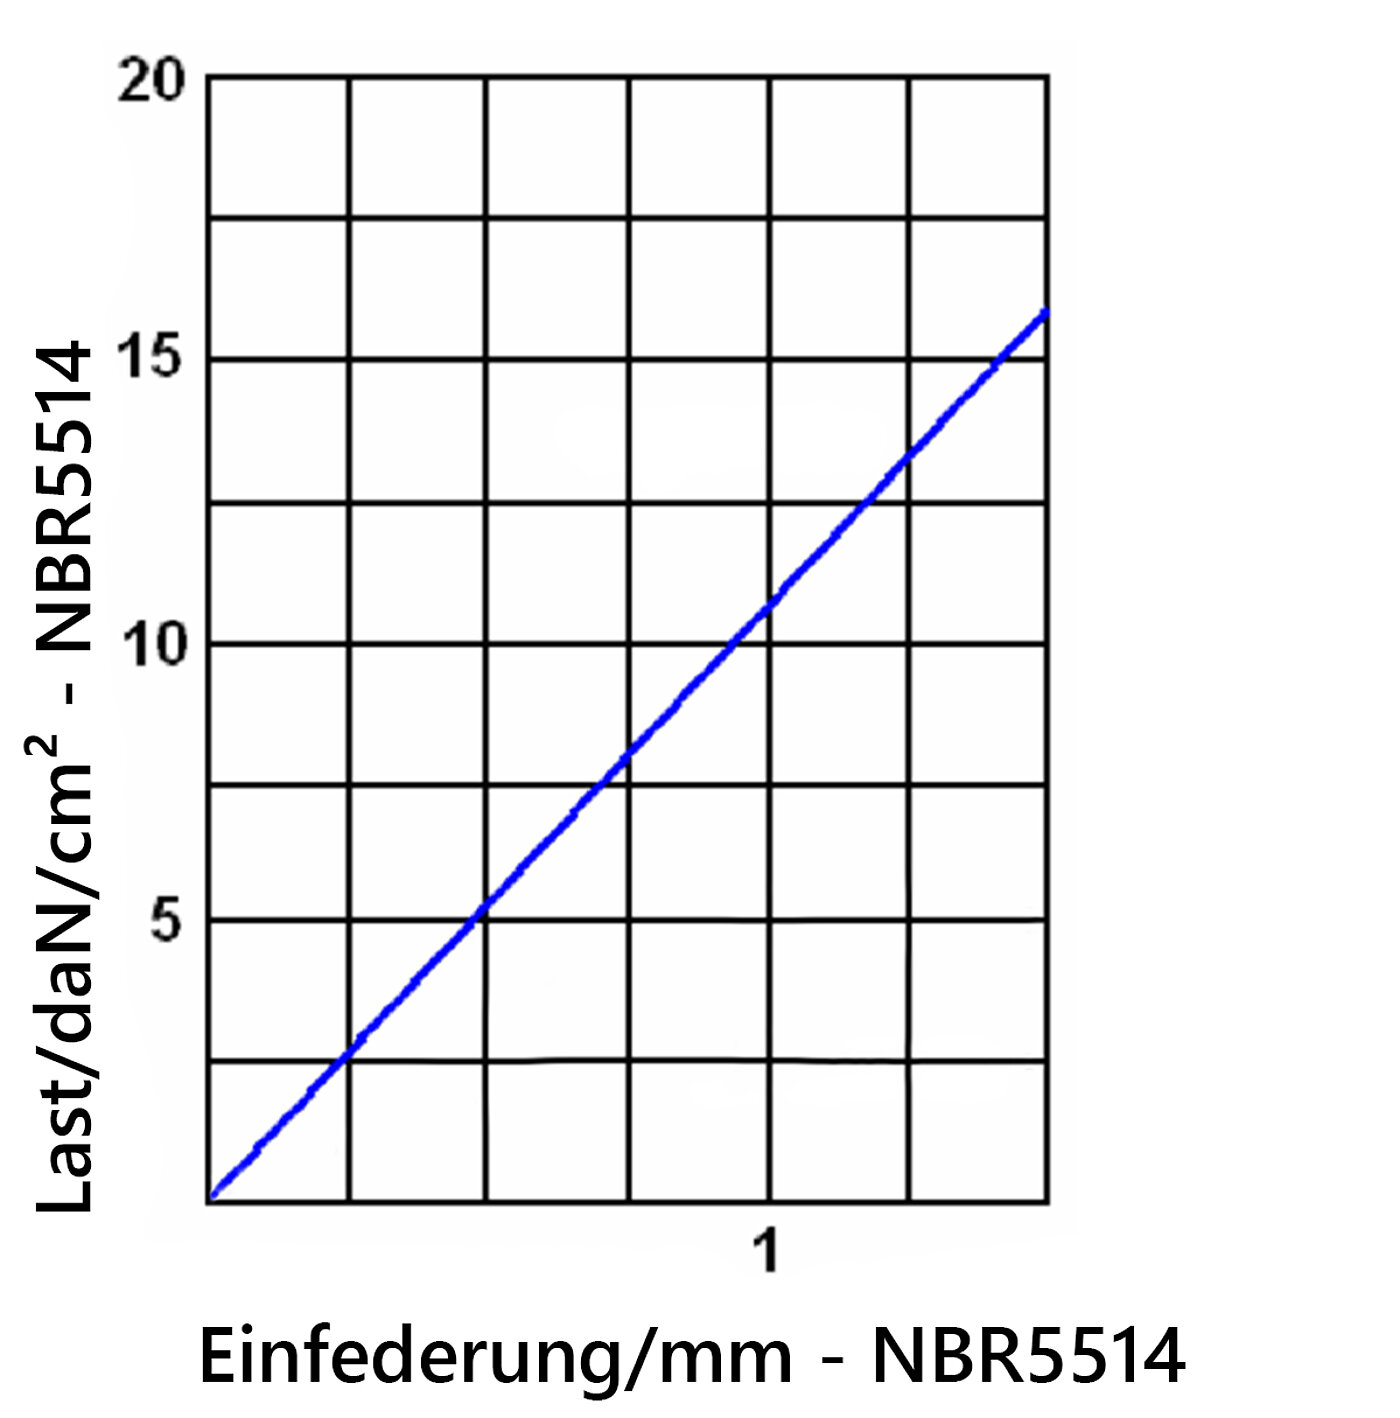 Diagramm der Einfederung der Elastomerplatte NBR5514 unter Last